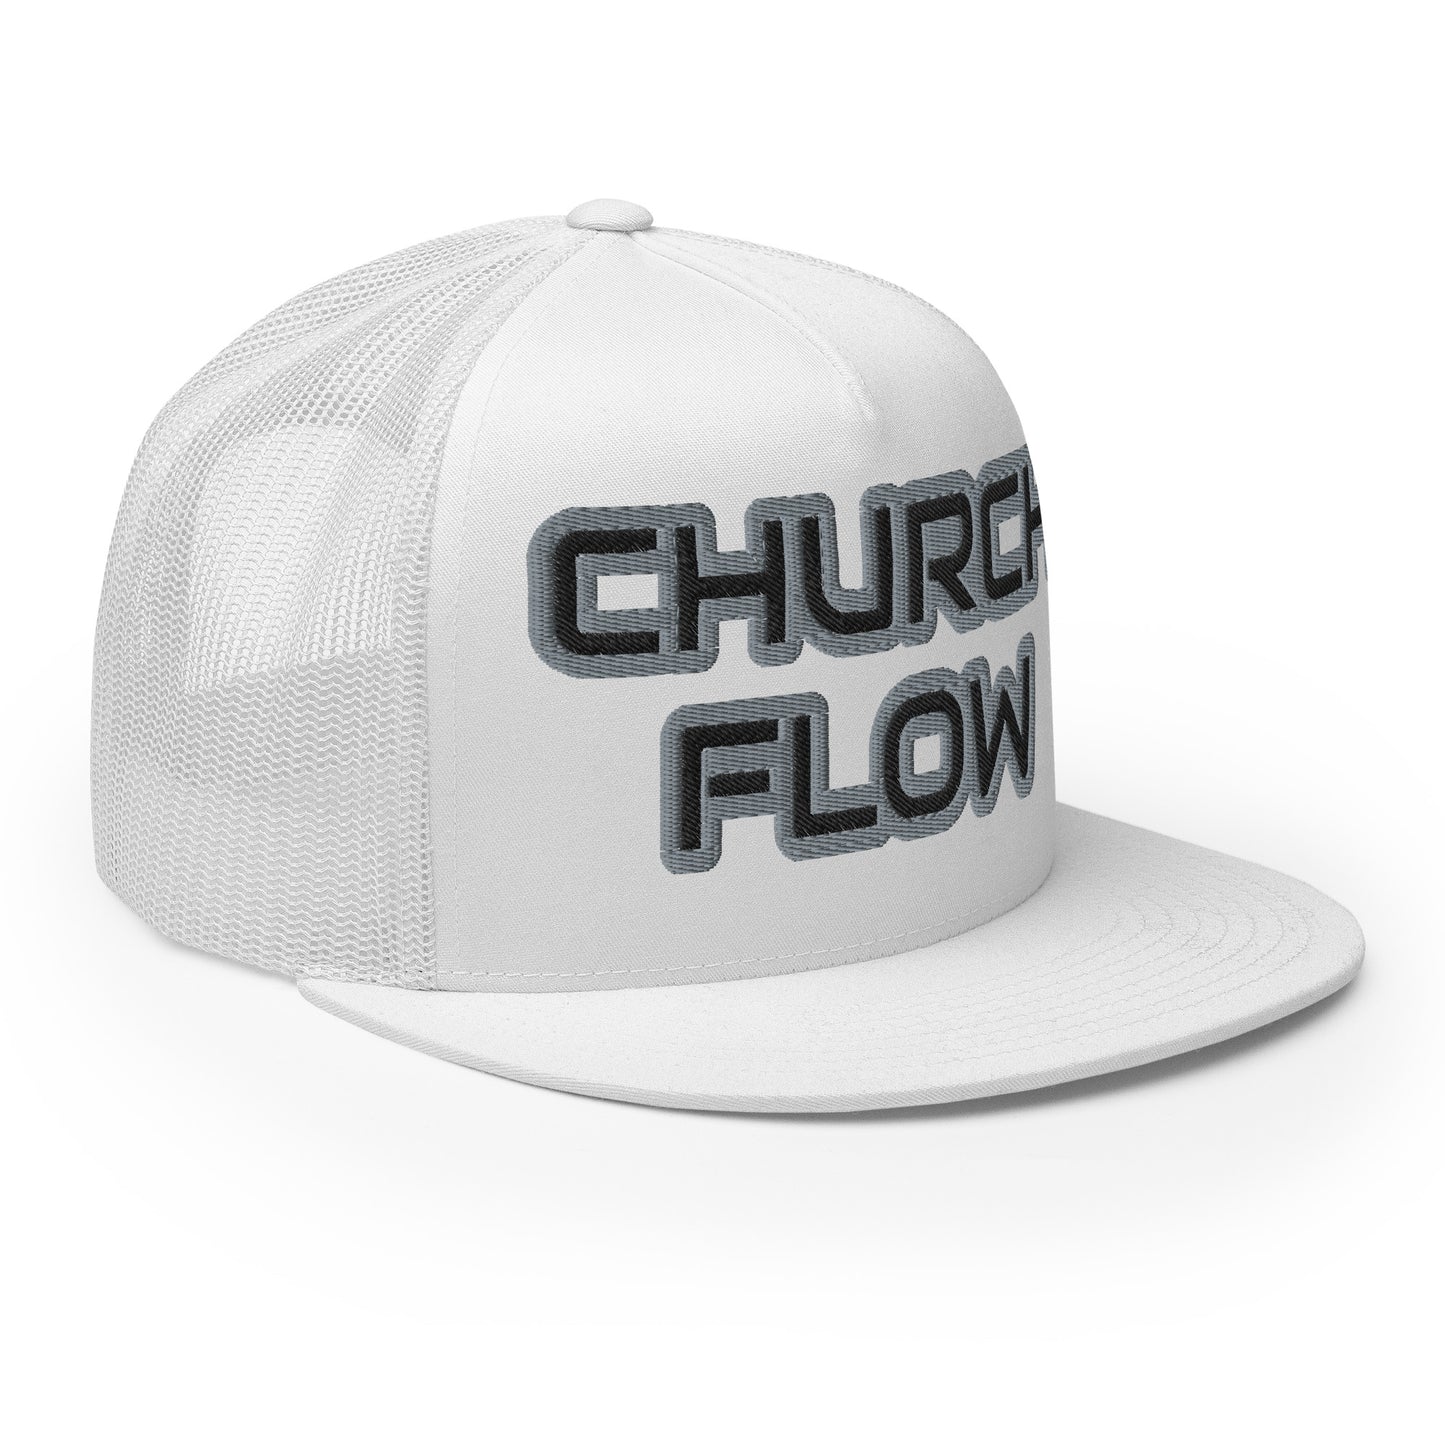 CHURCH FLOW- Trucker Cap